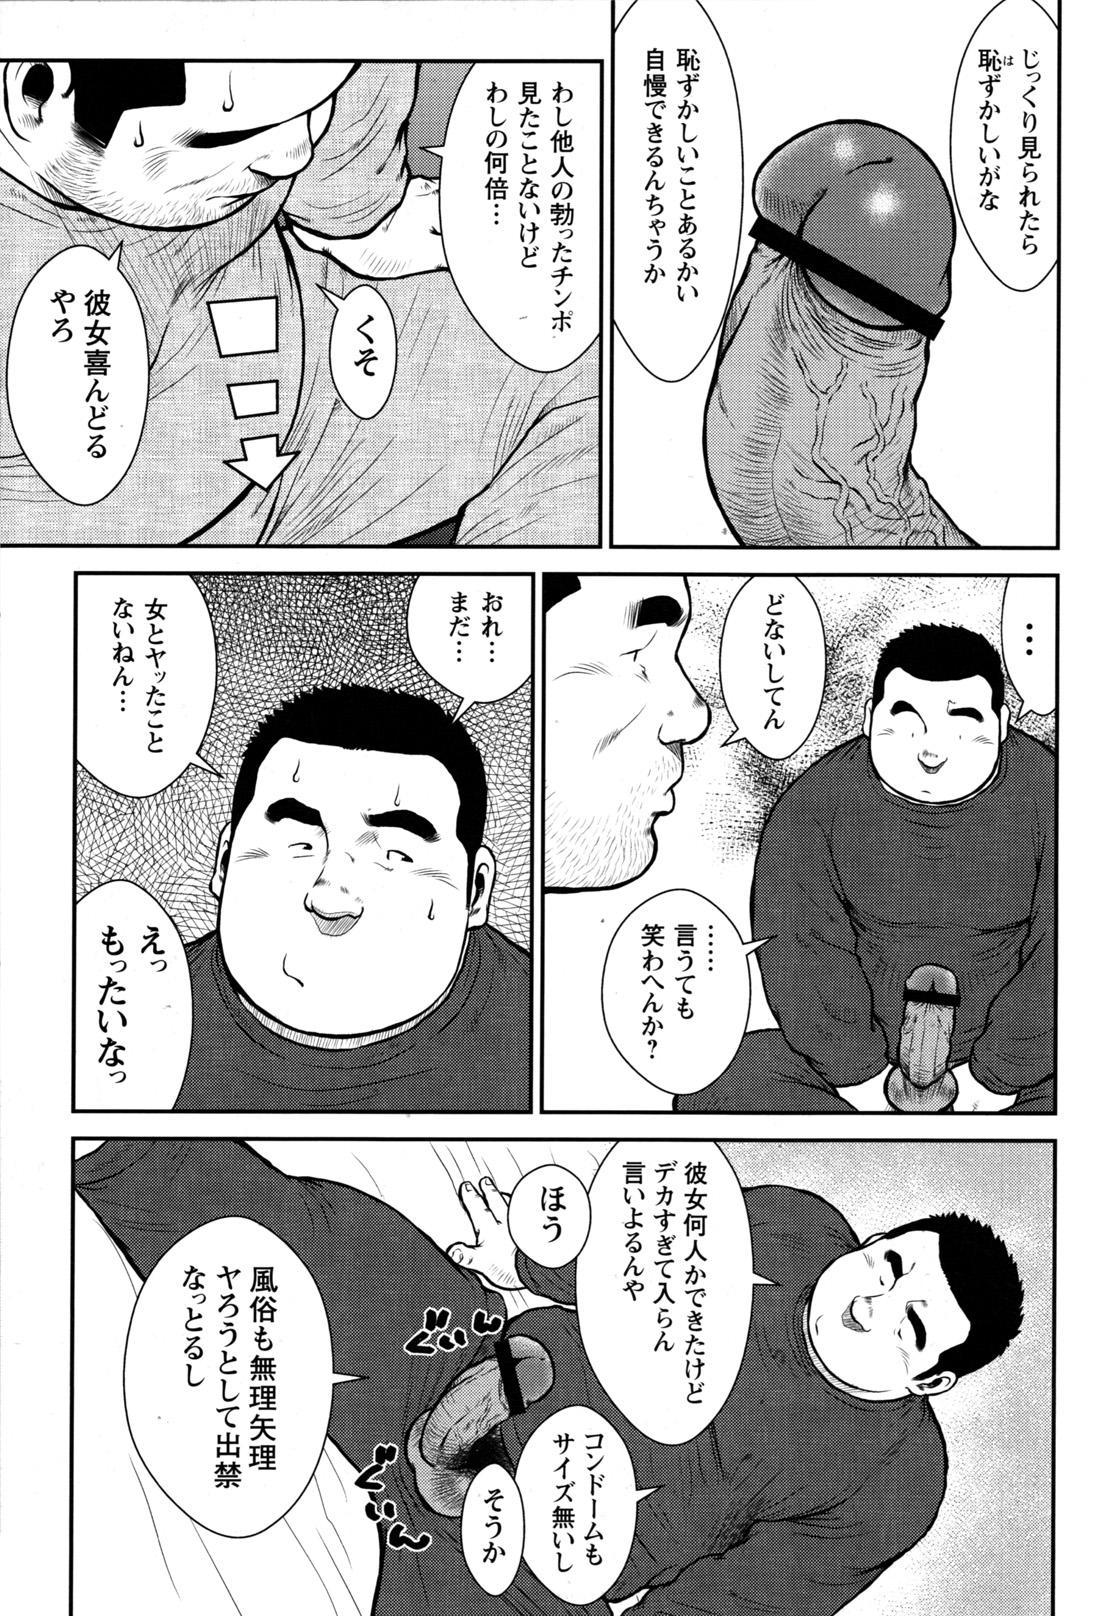 Comic G-men Gaho No.09 Gacchibi Zeme 107